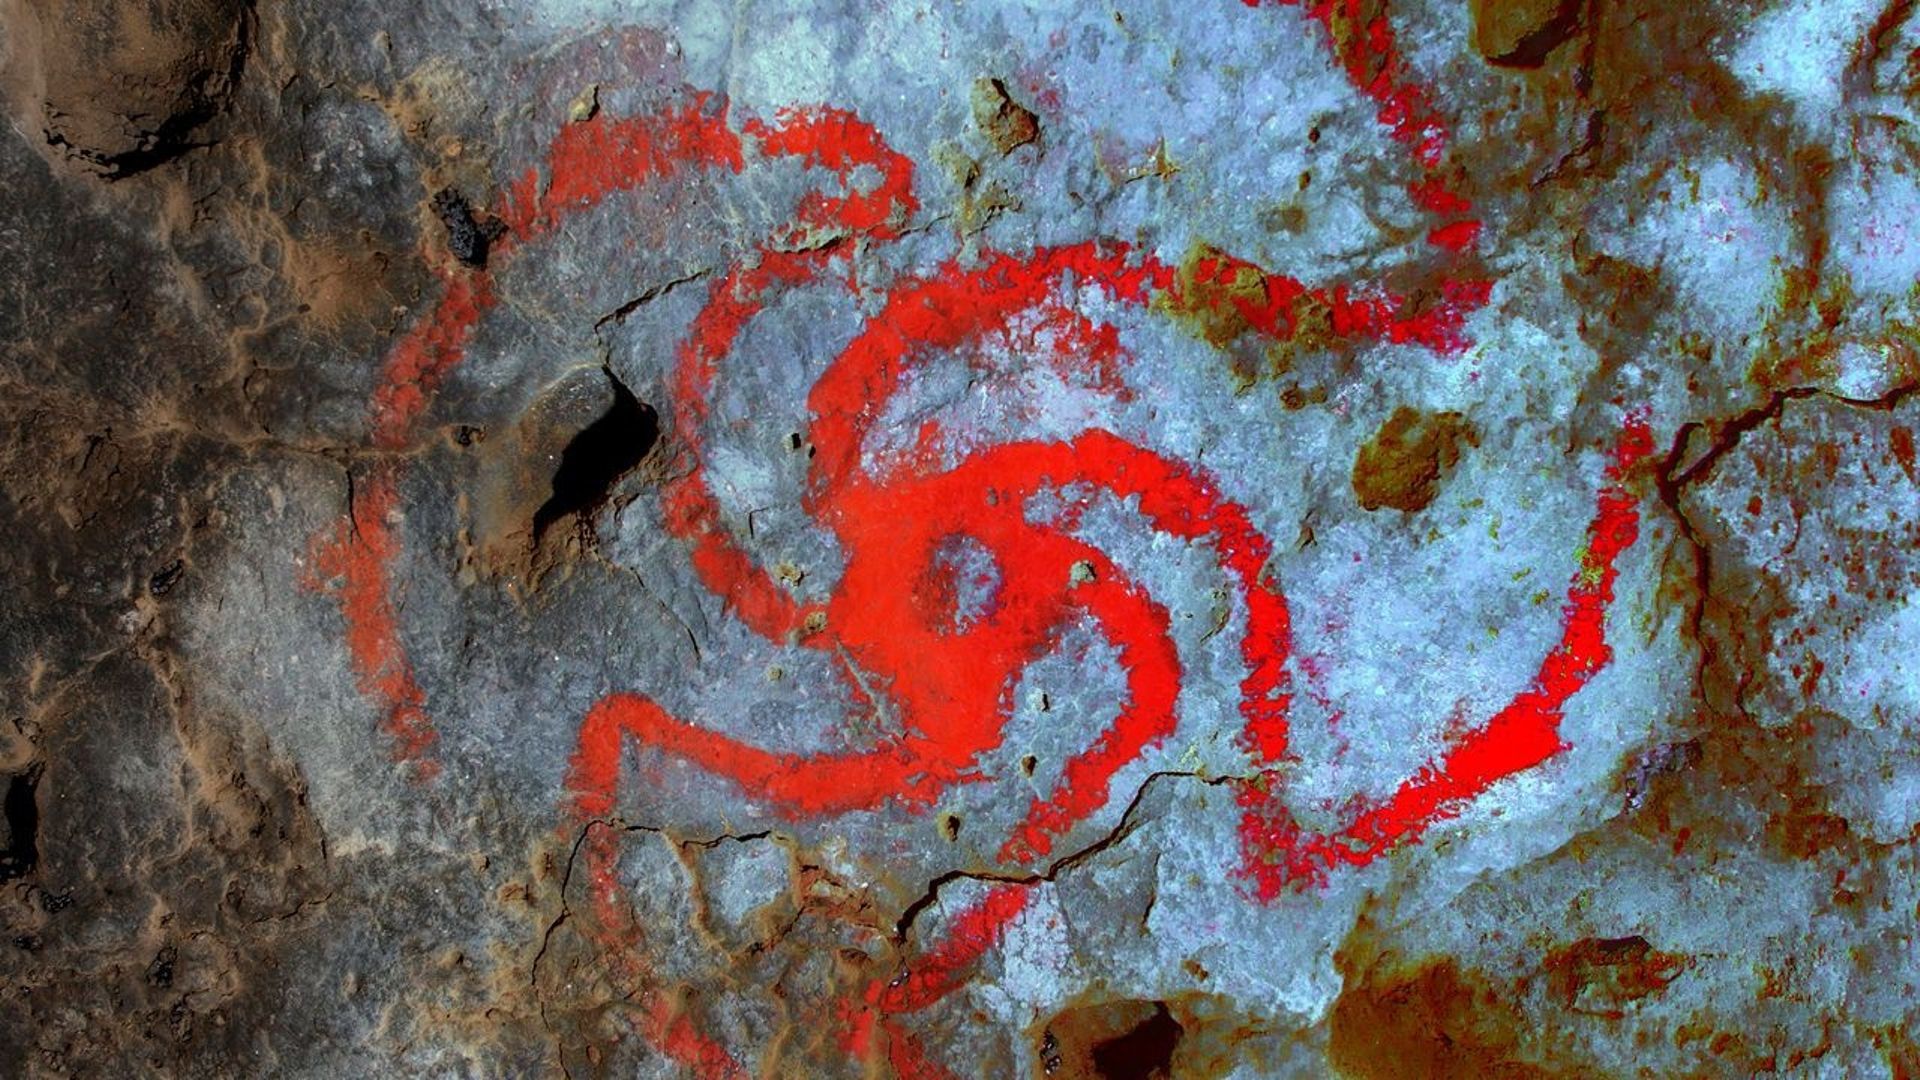 Peintures rupestres et hallucinogènes, une grotte californienne livre ses secrets